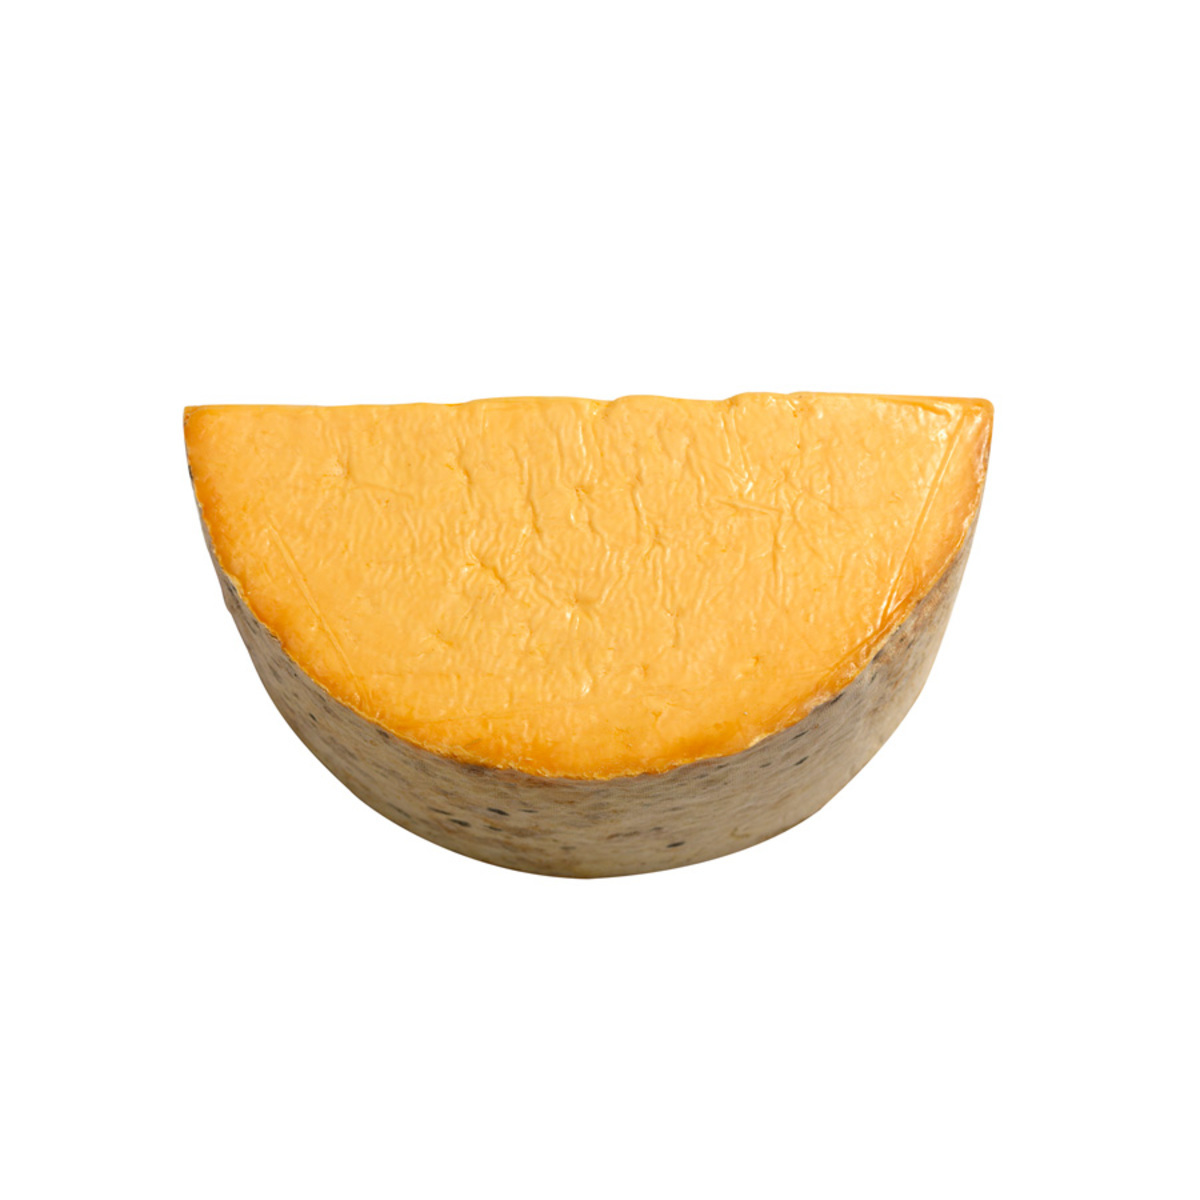 Appleby Cheshire Cheese, 2kg